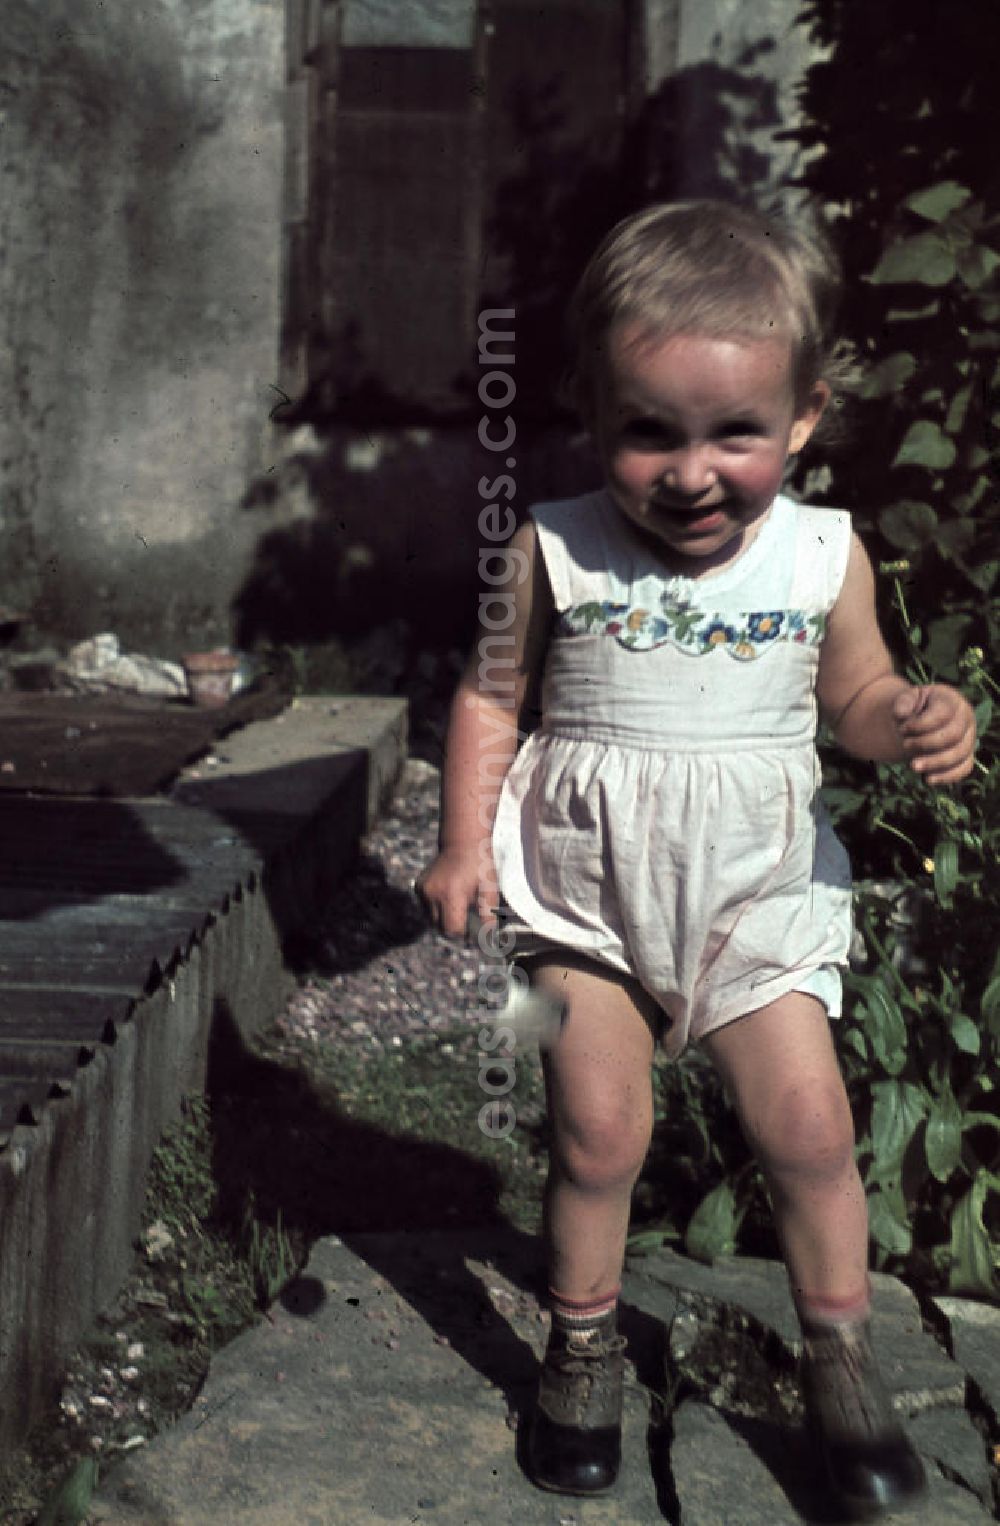 GDR photo archive: Siegen - Kleinkind spielt im Garten. Plying infant in a garden.